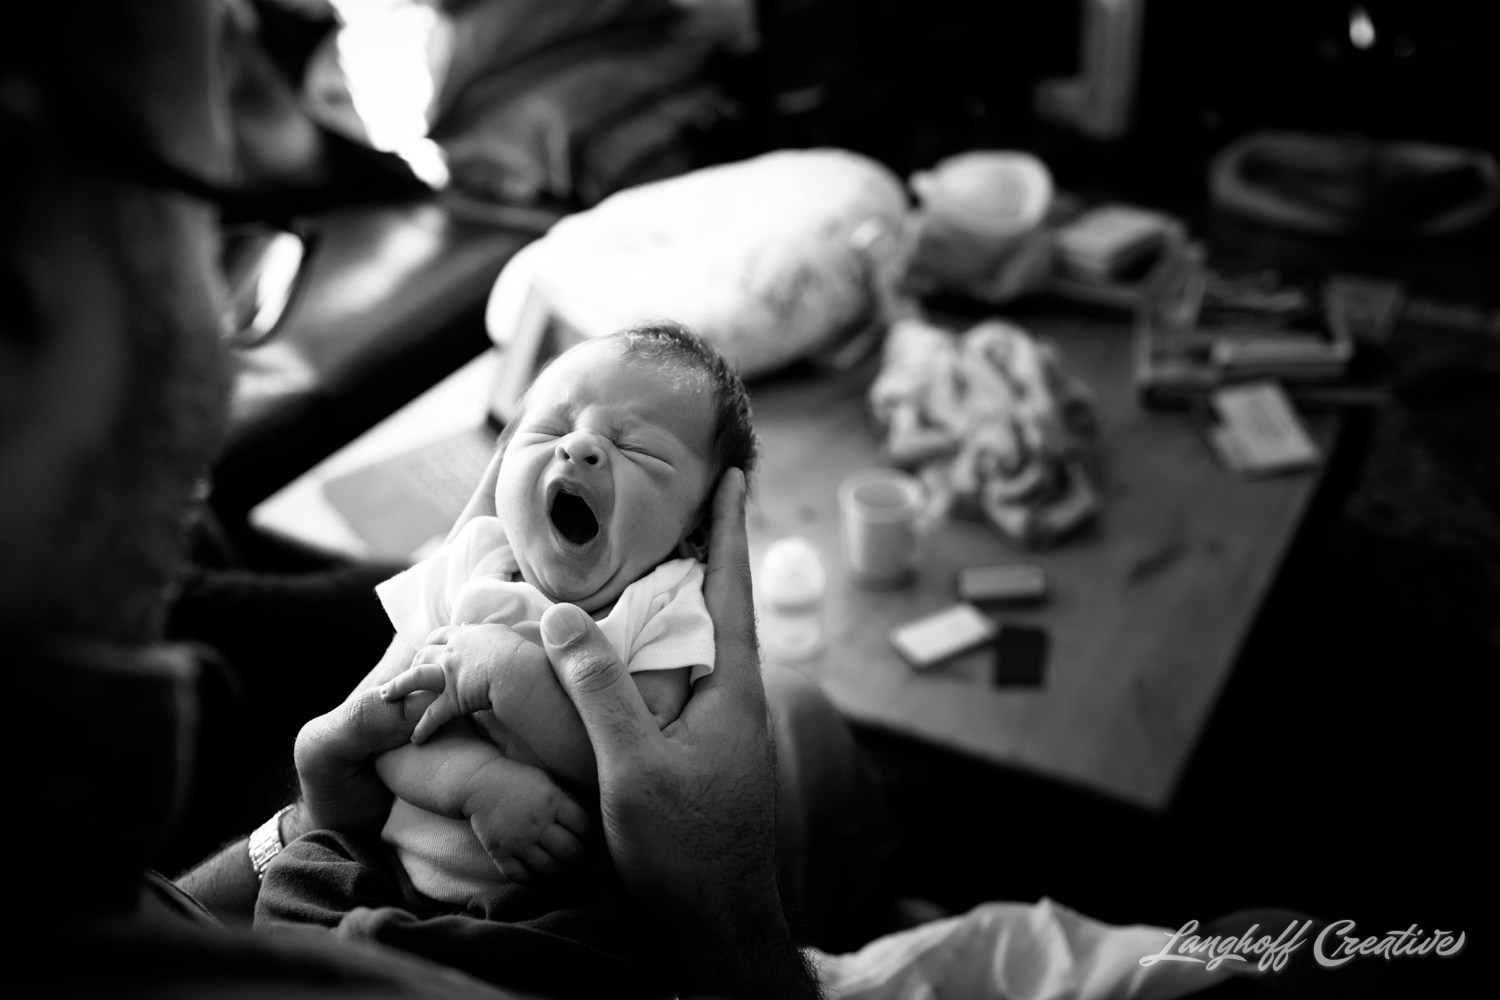 DocumentaryNewbornSession-DocumentaryFamilyPhotography-RDUfamily-Durham-NewbornPhotography-LanghoffCreative-GambinoFamily-Feb2018-5-image.jpg